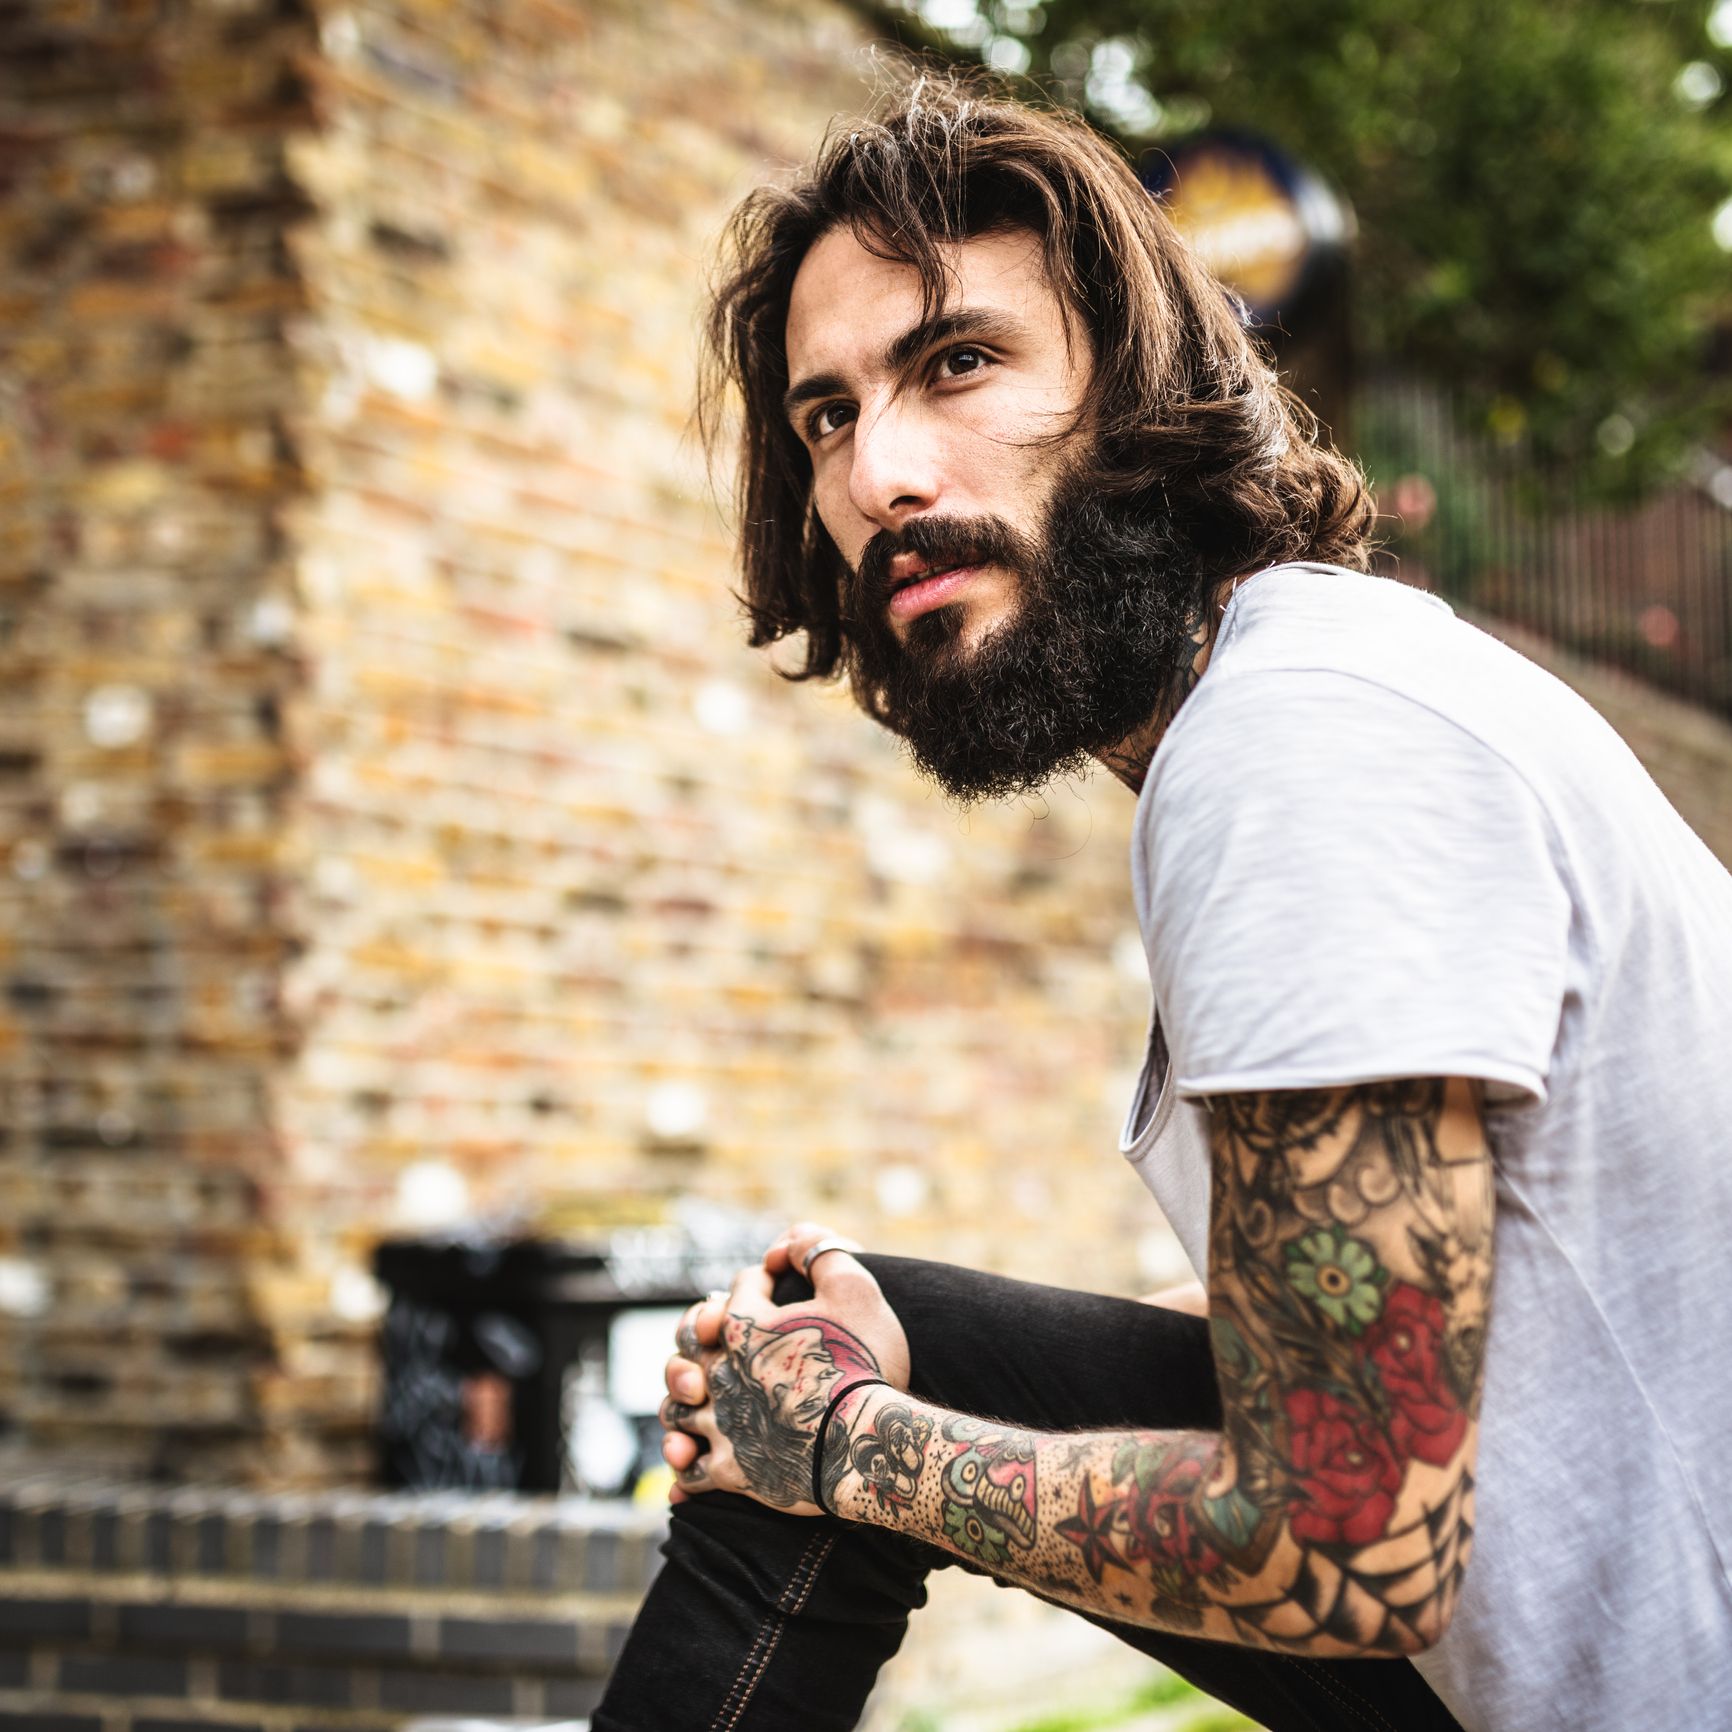 Full Wrist Tattoo | 40 Stylish Wrist Tattoos For Men - PROJAQK | Half  sleeve tattoo, Best sleeve tattoos, Forearm tattoos